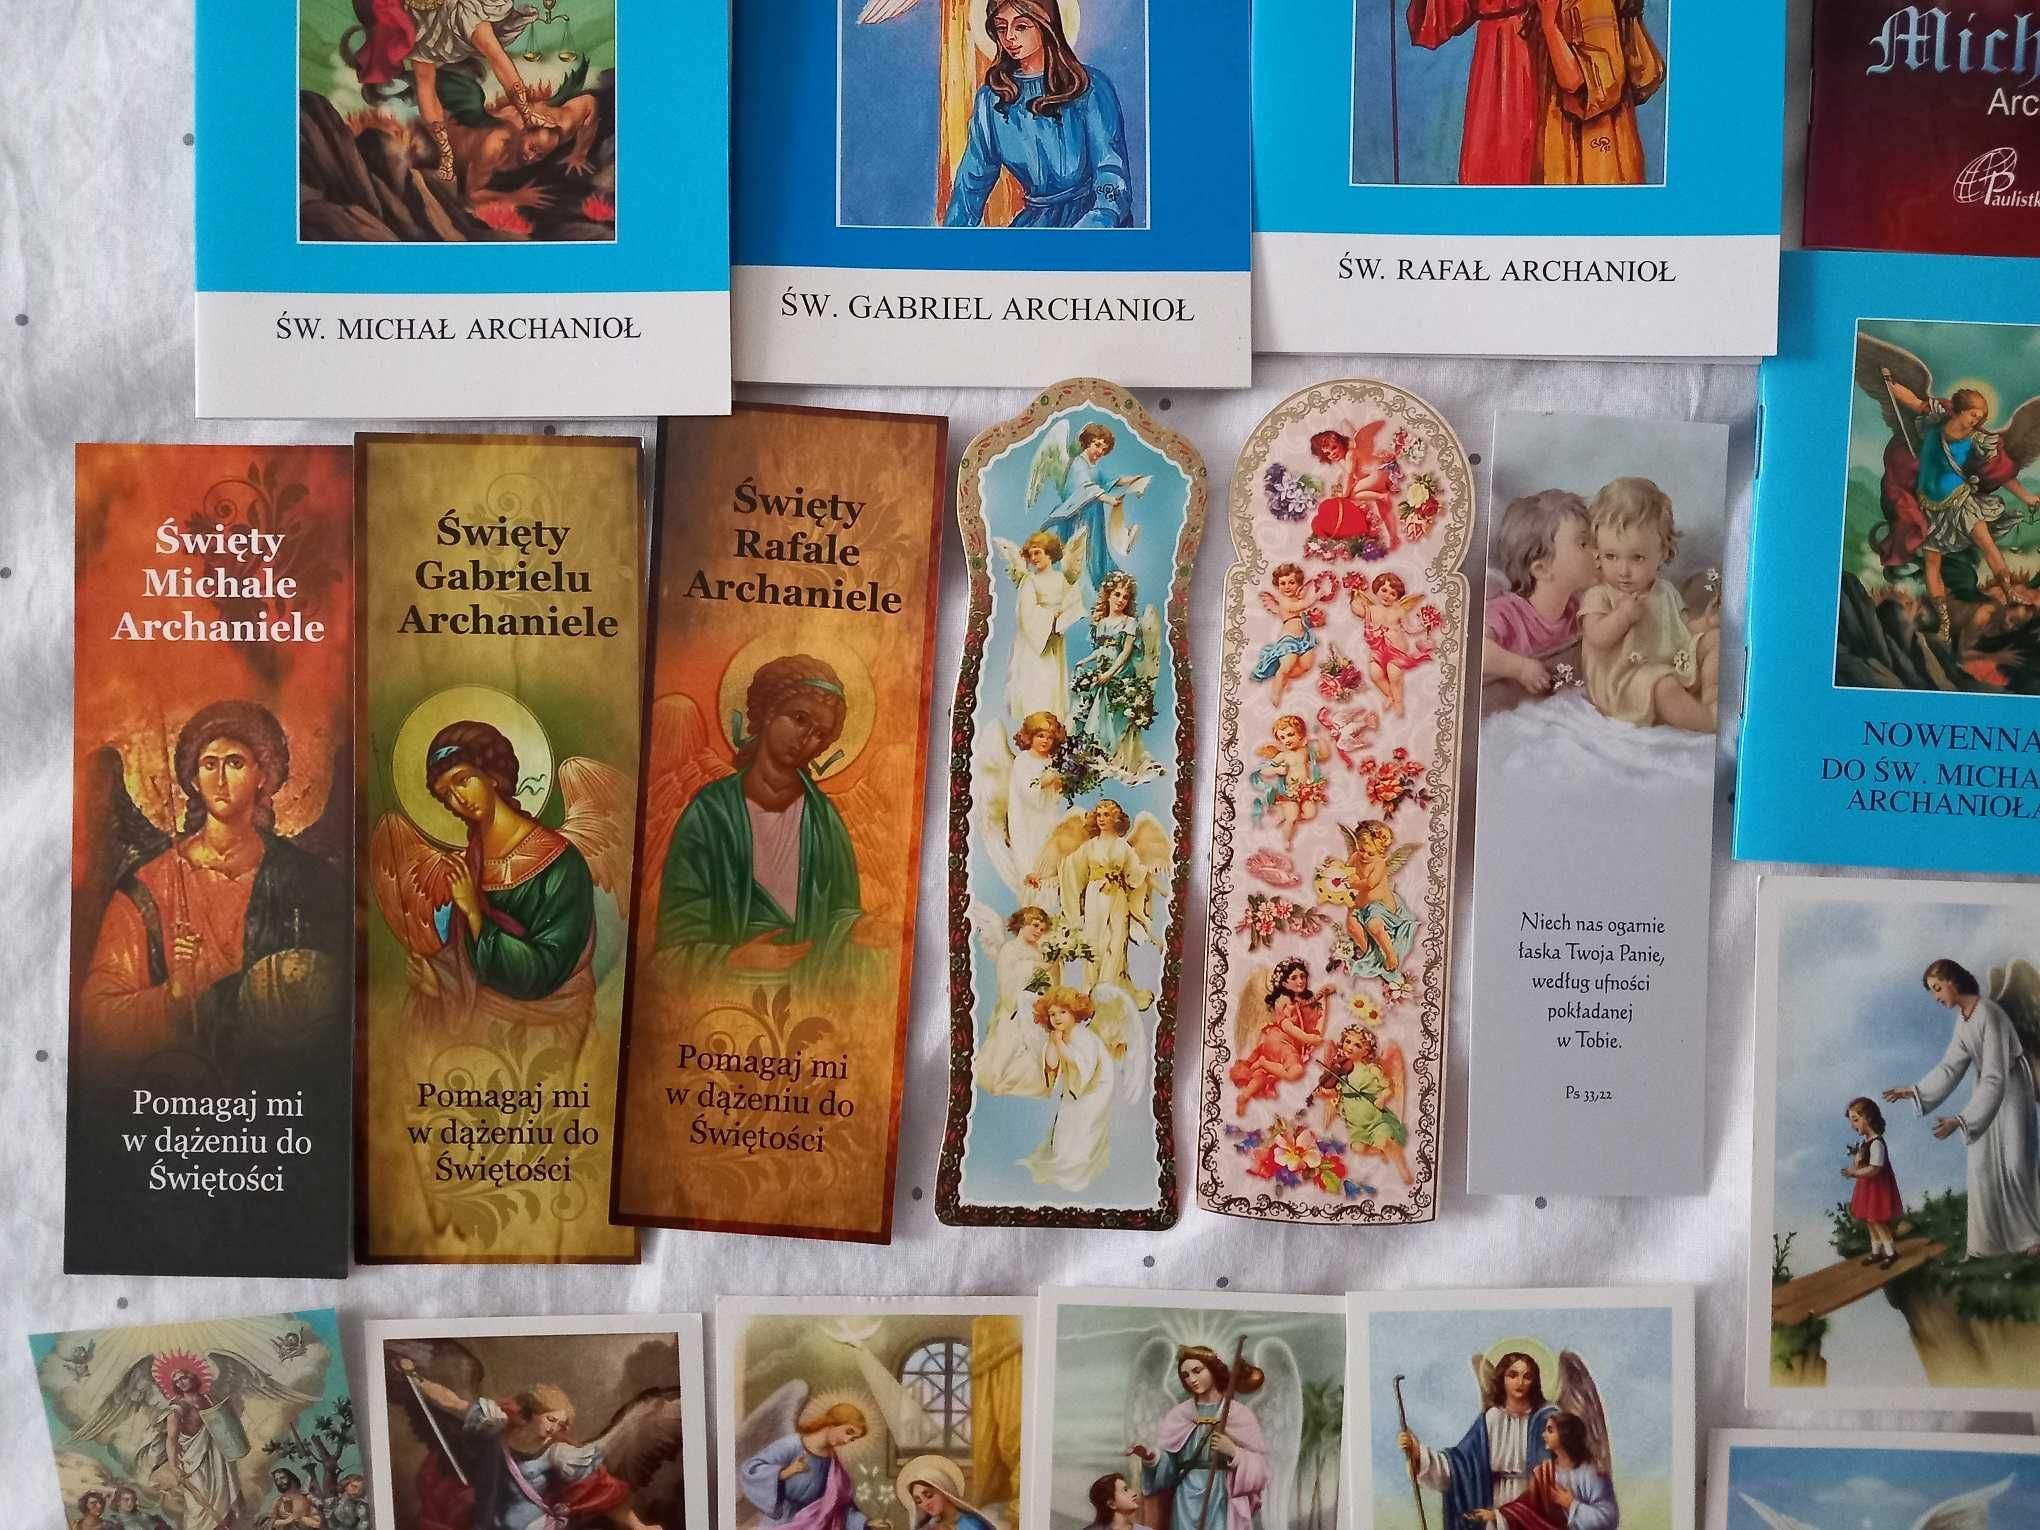 Anioły zestaw książki obrazki figurki Angels religia chrześcijaństwo